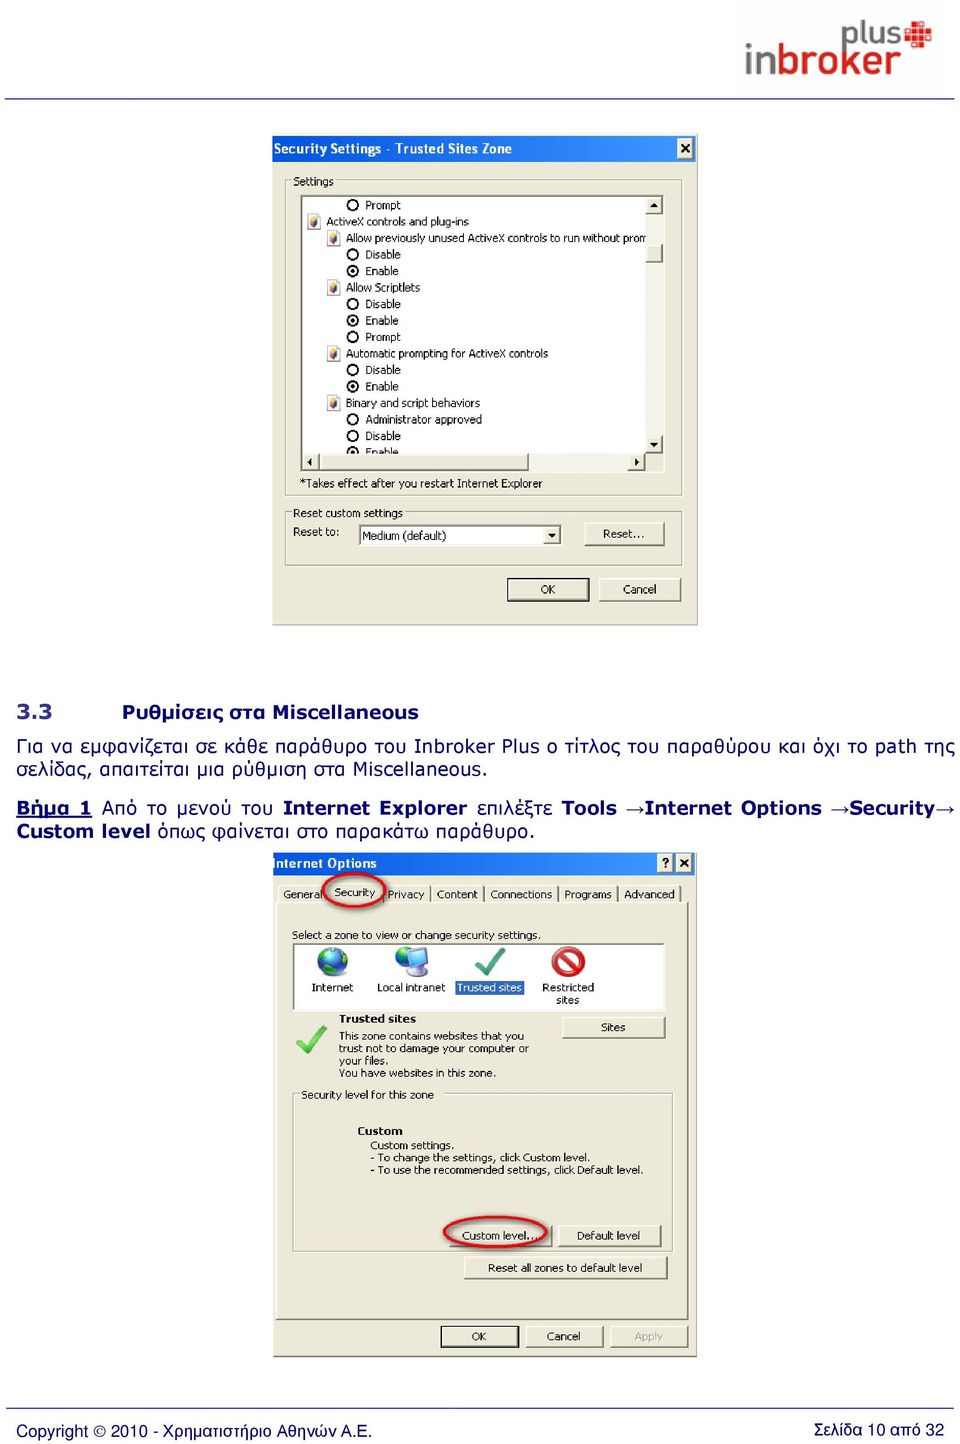 Βήµα 1 Από το µενού του Internet Explorer επιλέξτε Tools Internet Options Security Custom